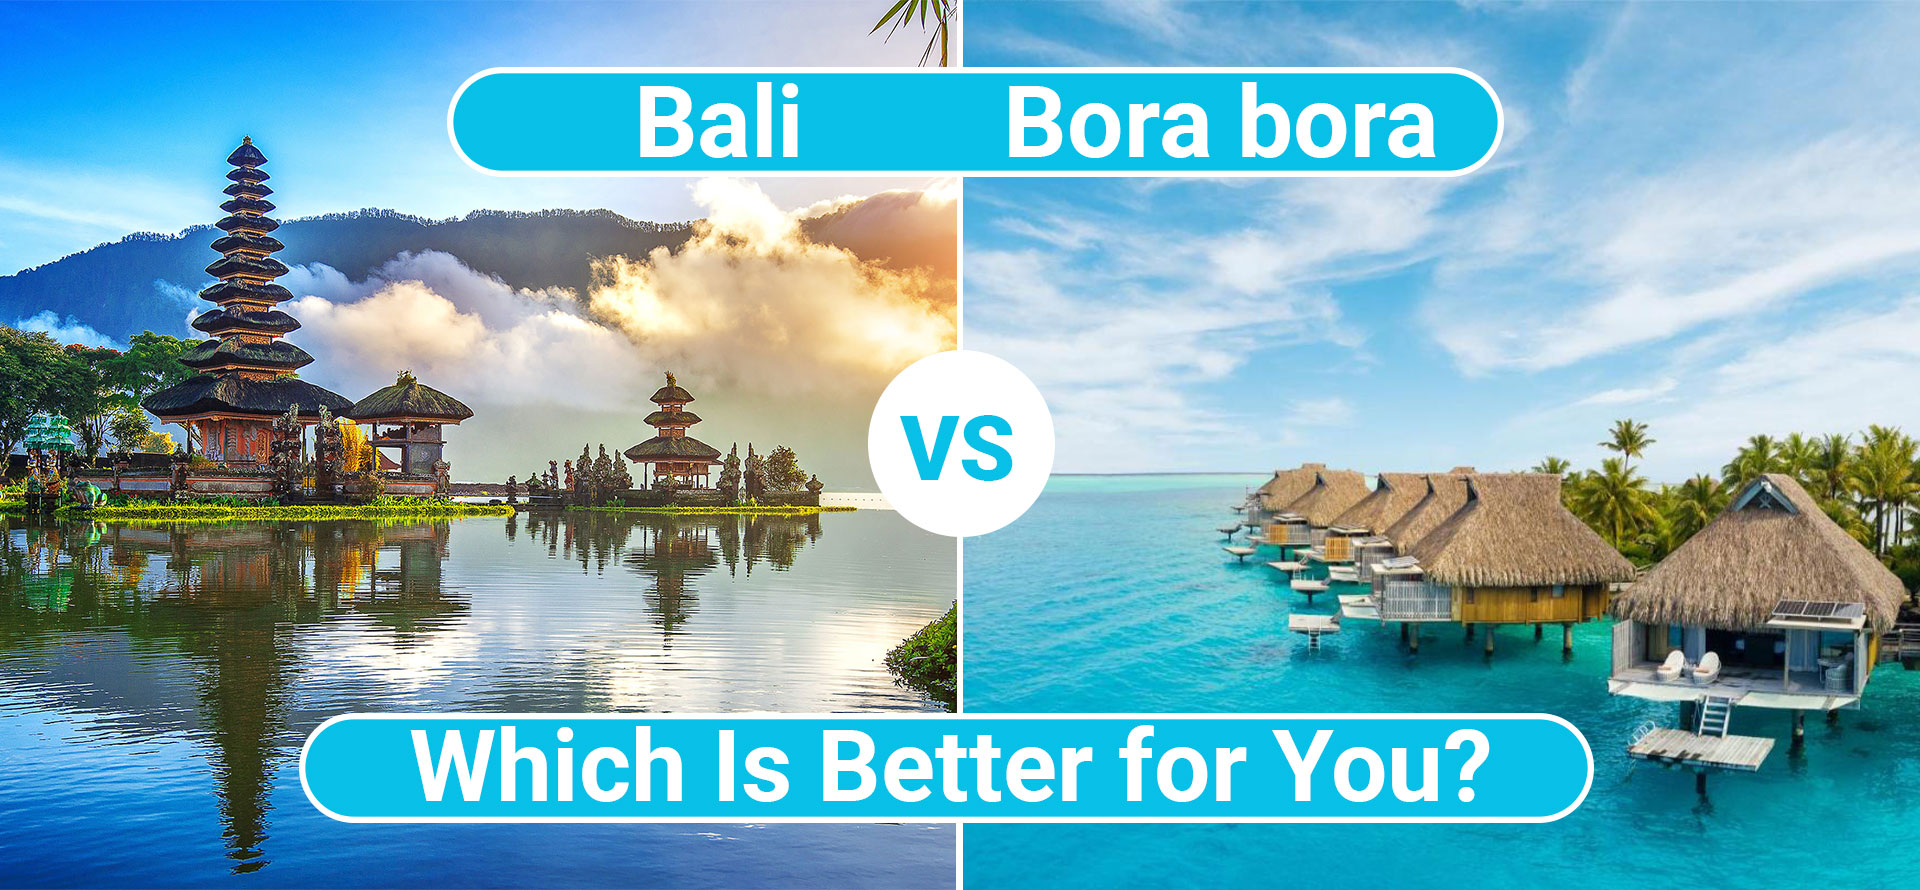 Bali vs bora bora.